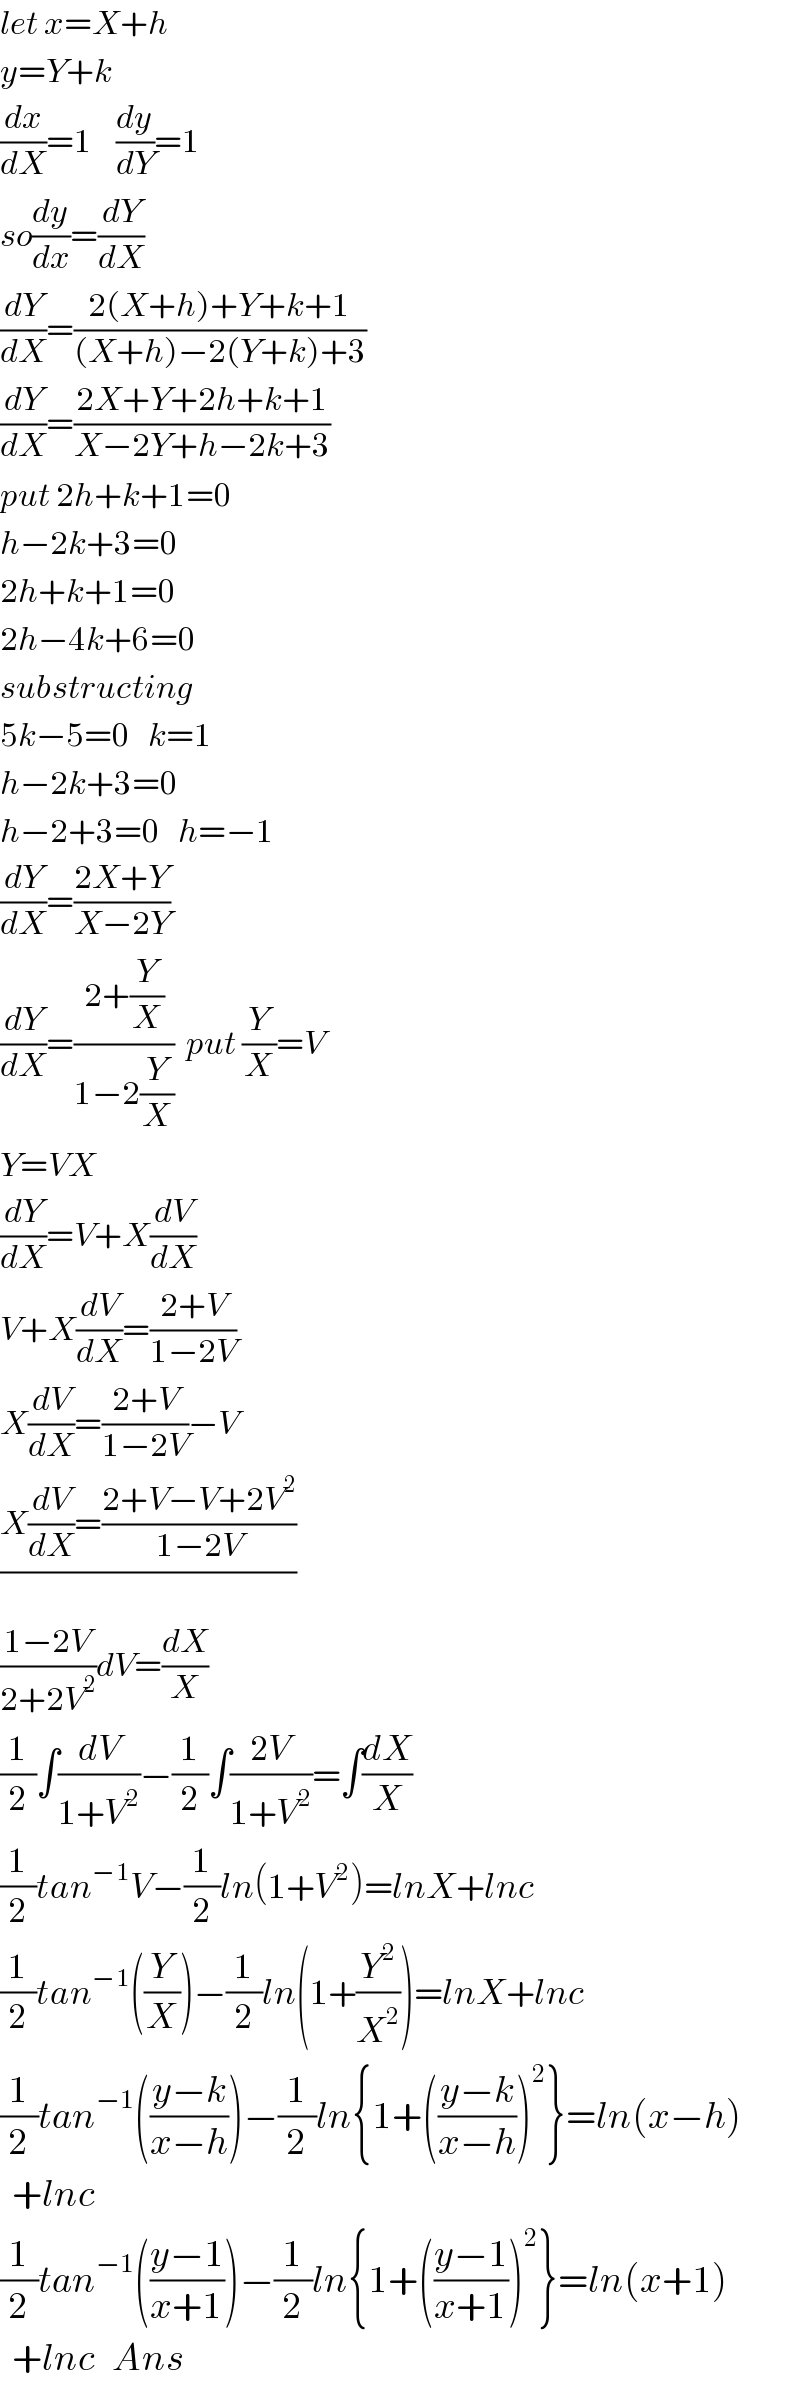 let x=X+h    y=Y+k  (dx/dX)=1    (dy/dY)=1  so(dy/dx)=(dY/dX)  (dY/dX)=((2(X+h)+Y+k+1)/((X+h)−2(Y+k)+3))  (dY/dX)=((2X+Y+2h+k+1)/(X−2Y+h−2k+3))  put 2h+k+1=0  h−2k+3=0  2h+k+1=0  2h−4k+6=0  substructing  5k−5=0   k=1    h−2k+3=0  h−2+3=0   h=−1  (dY/dX)=((2X+Y)/(X−2Y))  (dY/dX)=((2+(Y/X))/(1−2(Y/X)))  put (Y/X)=V  Y=VX  (dY/dX)=V+X(dV/dX)  V+X(dV/dX)=((2+V)/(1−2V))  X(dV/dX)=((2+V)/(1−2V))−V  ((X(dV/dX)=((2+V−V+2V^2 )/(1−2V)))/)  ((1−2V)/(2+2V^2 ))dV=(dX/X)  (1/2)∫(dV/(1+V^2 ))−(1/2)∫((2V)/(1+V^2 ))=∫(dX/X)  (1/2)tan^(−1) V−(1/2)ln(1+V^2 )=lnX+lnc  (1/2)tan^(−1) ((Y/X))−(1/2)ln(1+(Y^2 /X^2 ))=lnX+lnc  (1/2)tan^(−1) (((y−k)/(x−h)))−(1/2)ln{1+(((y−k)/(x−h)))^2 }=ln(x−h)    +lnc  (1/2)tan^(−1) (((y−1)/(x+1)))−(1/2)ln{1+(((y−1)/(x+1)))^2 }=ln(x+1)    +lnc   Ans  